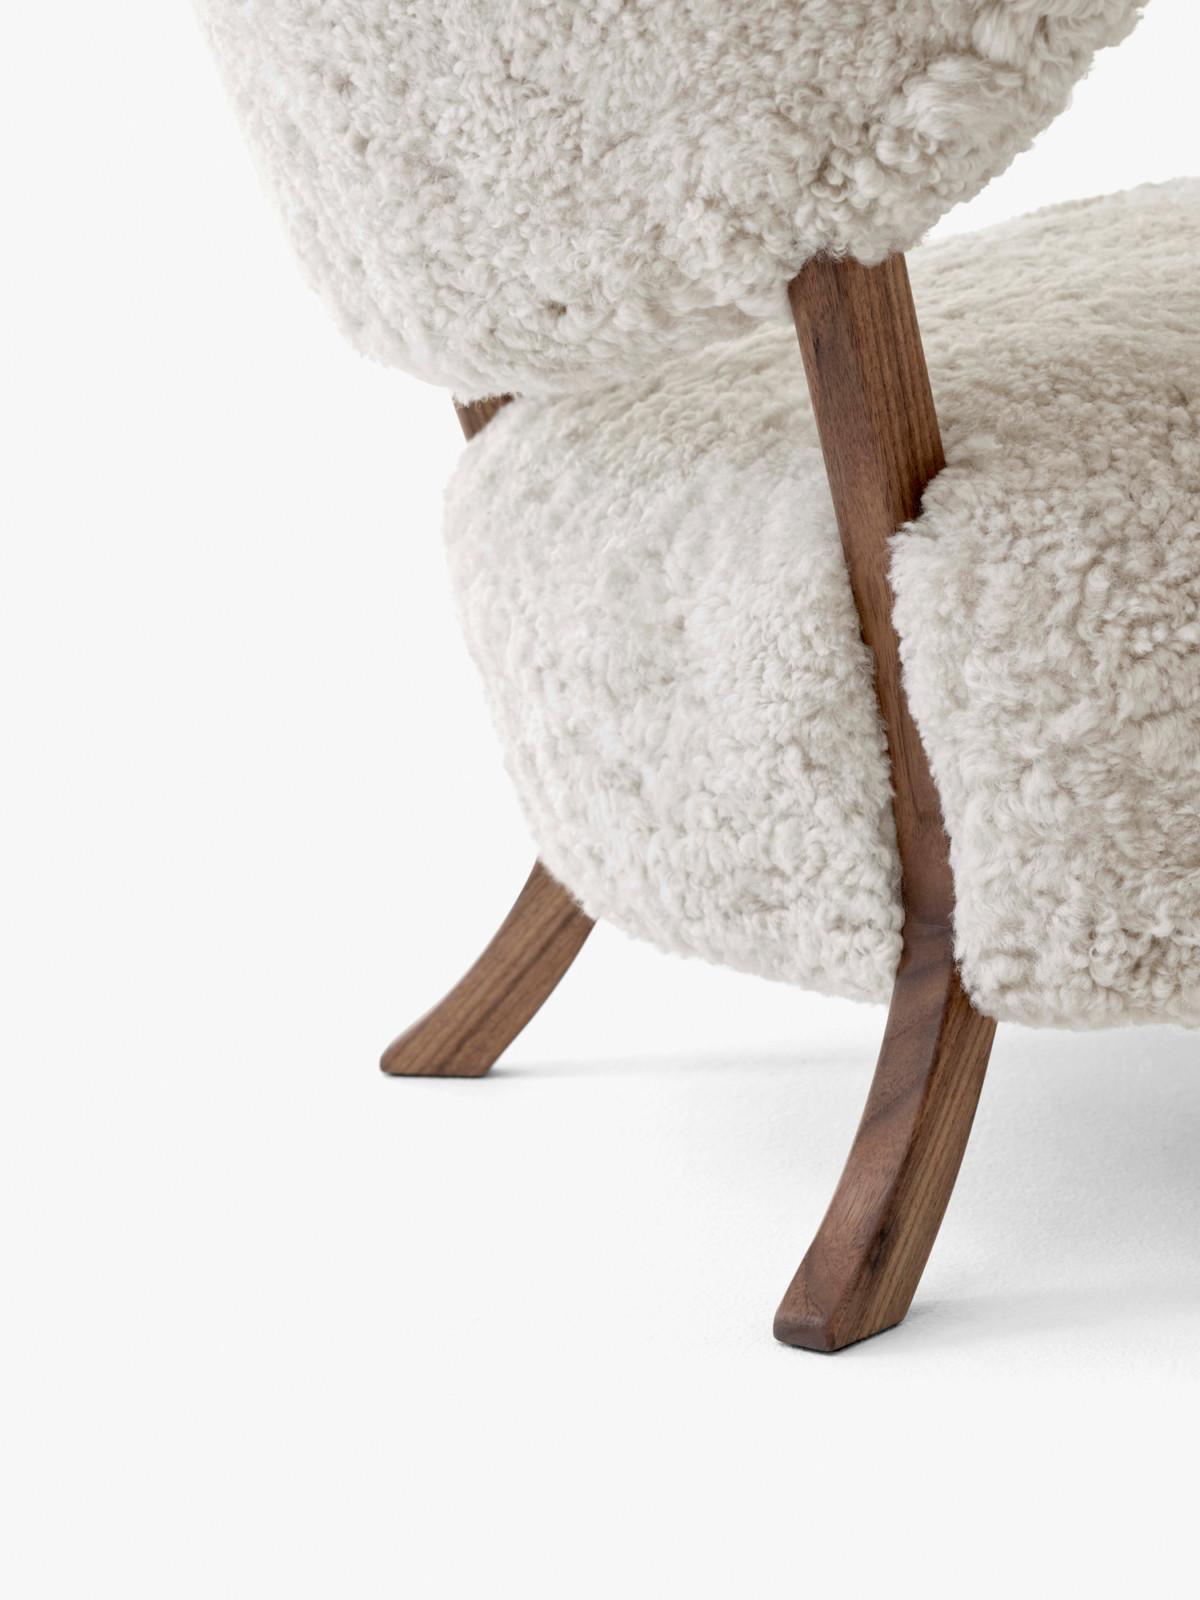 Wulff ist ein Loungesessel, dessen gepolsterte Form eine Hommage an die handgefertigten Designs der 1930er Jahre ist. 
Wulff verspricht höchste Handwerkskunst und herausragenden Komfort mit einer luxuriösen, weichen Polsterung von Sitz und